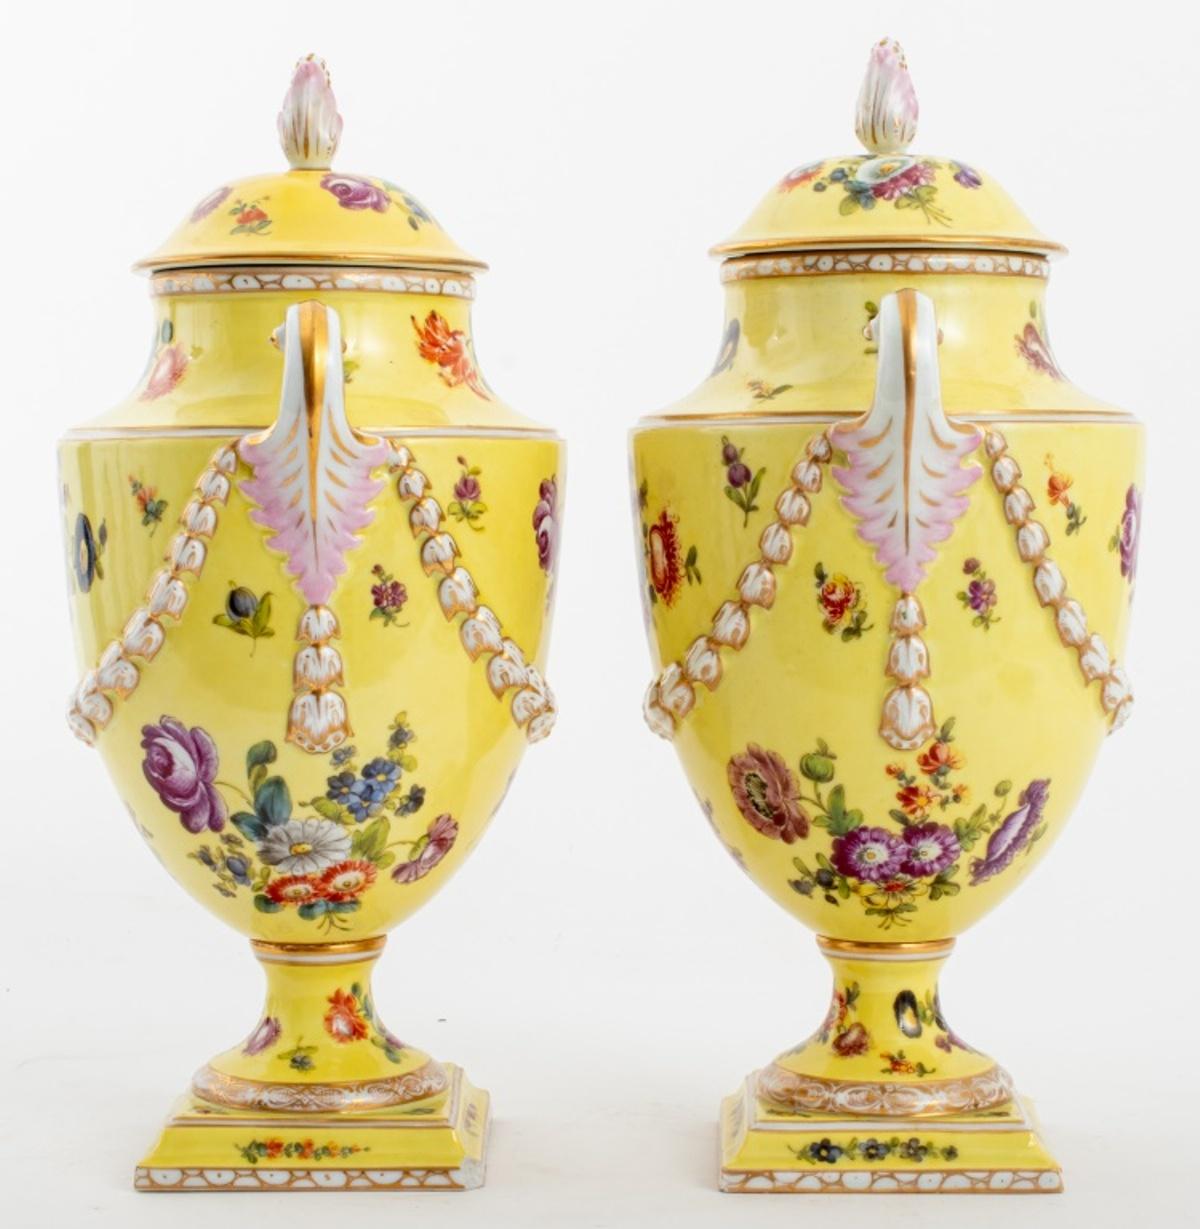 Aubusson Dresden Covered Porcelain Urn Vases, Pair